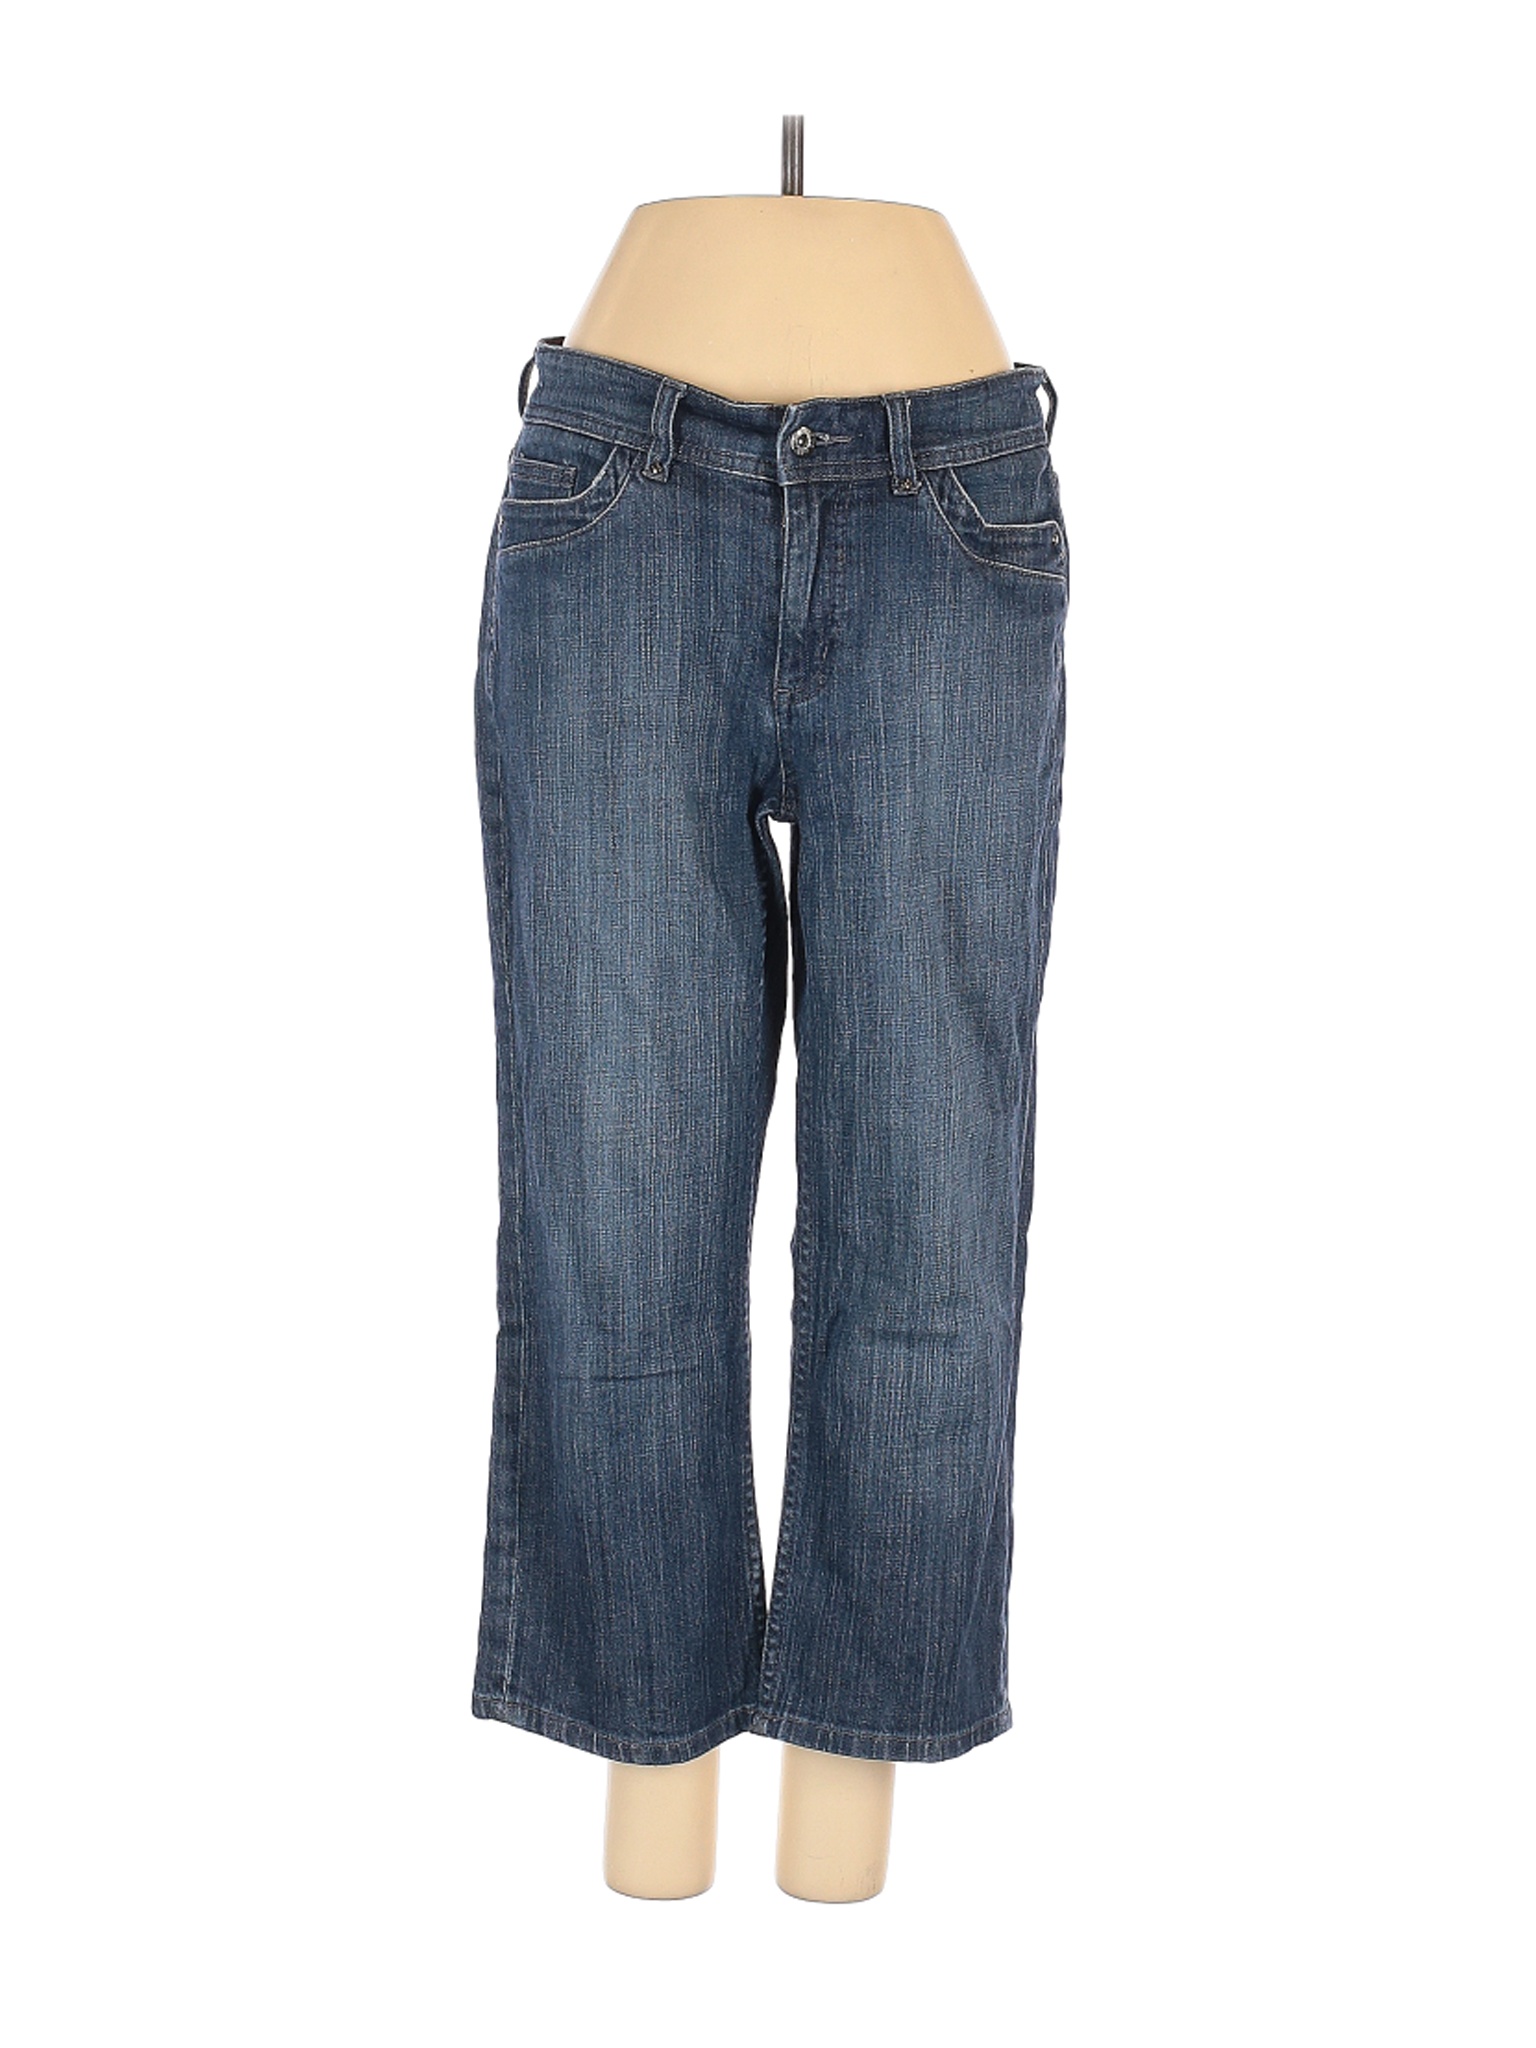 Chico's Women Blue Jeans S | eBay